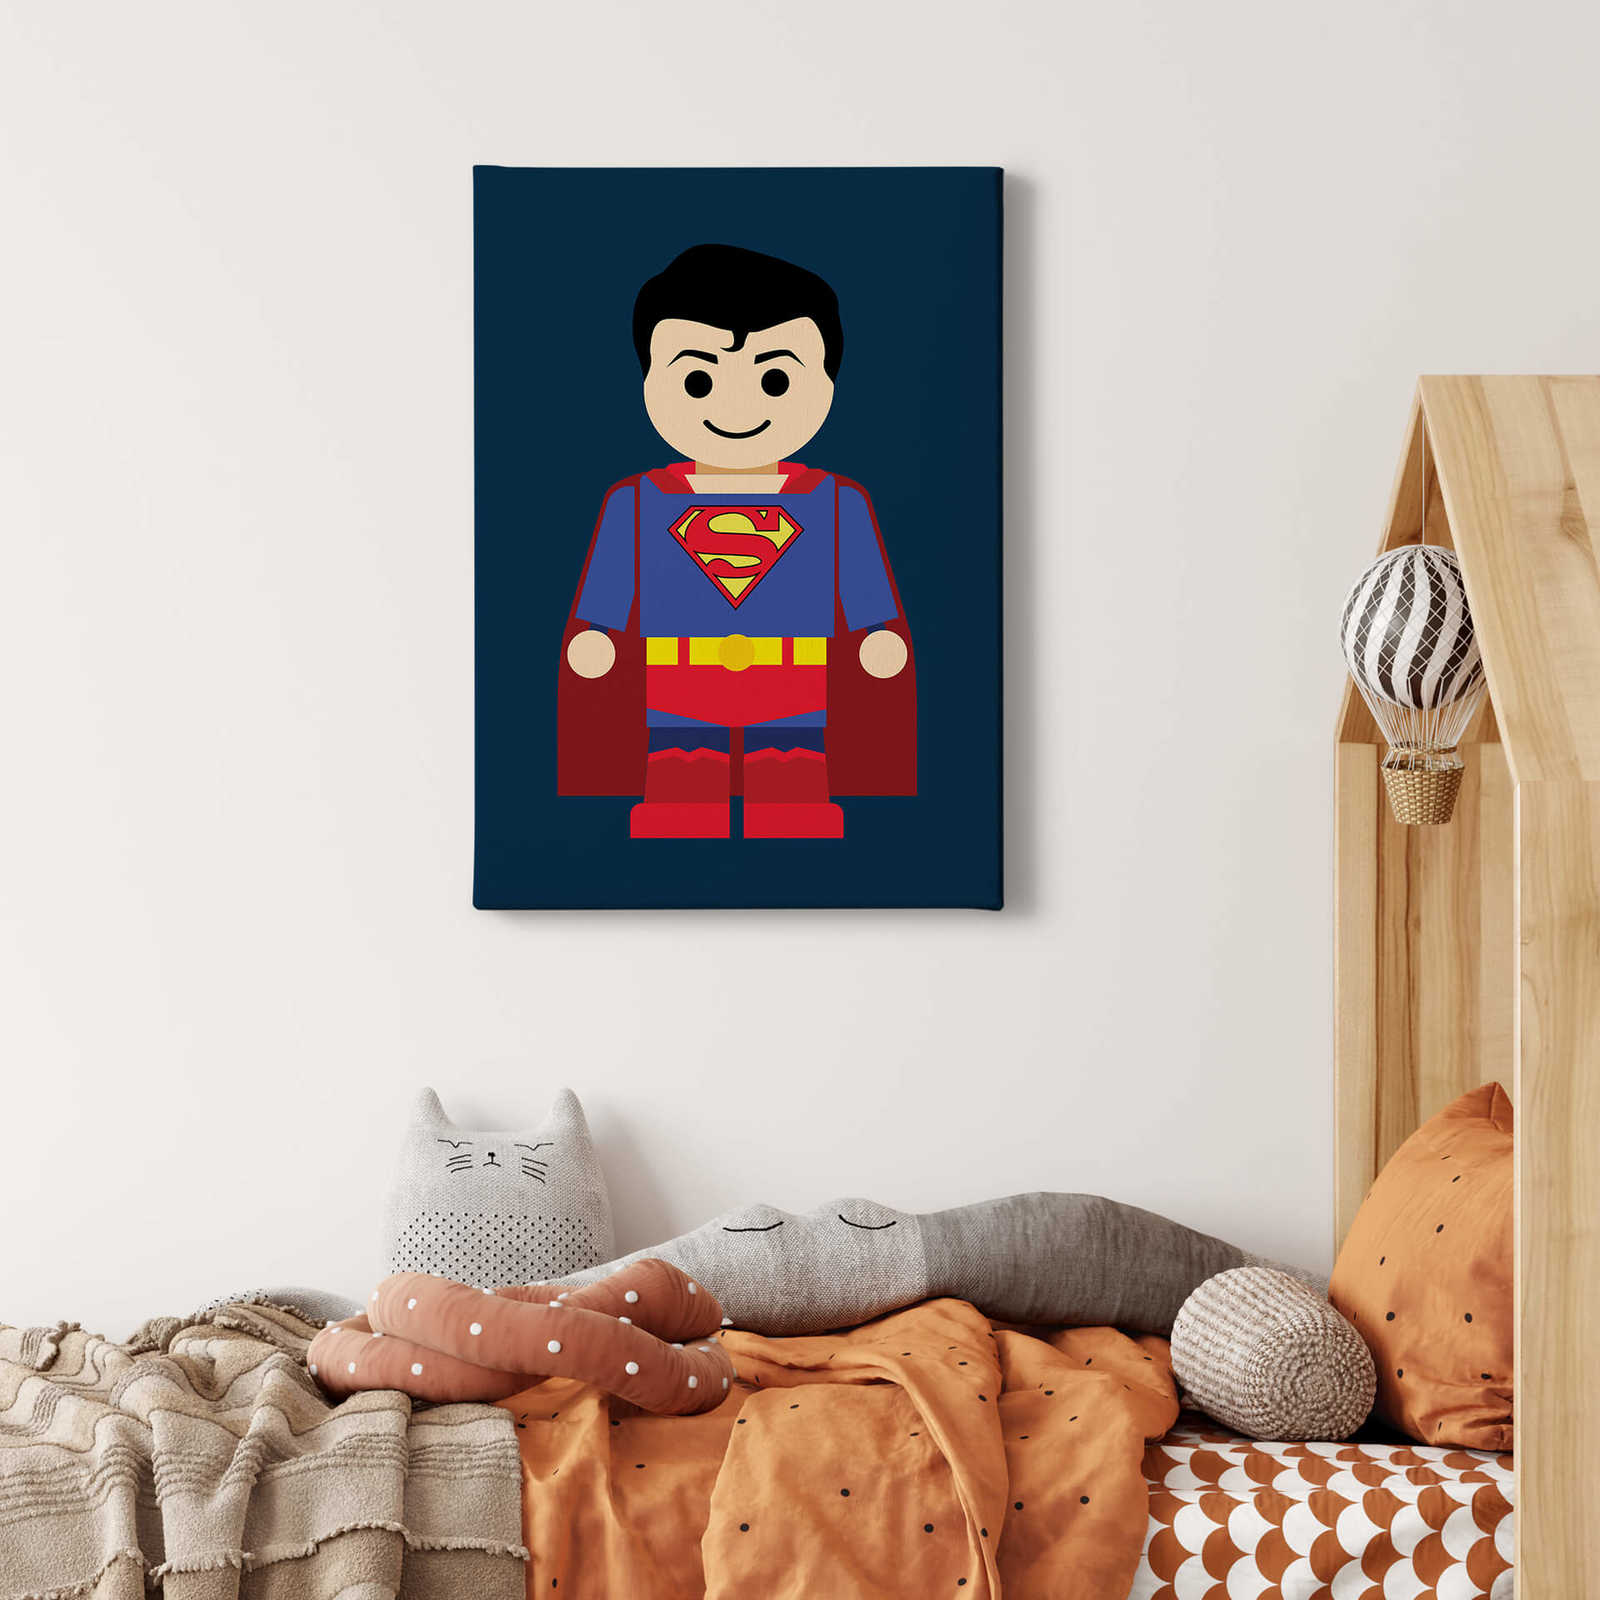             Bambini Dipinto su tela Superman di Gomes - 0,50 m x 0,70 m
        